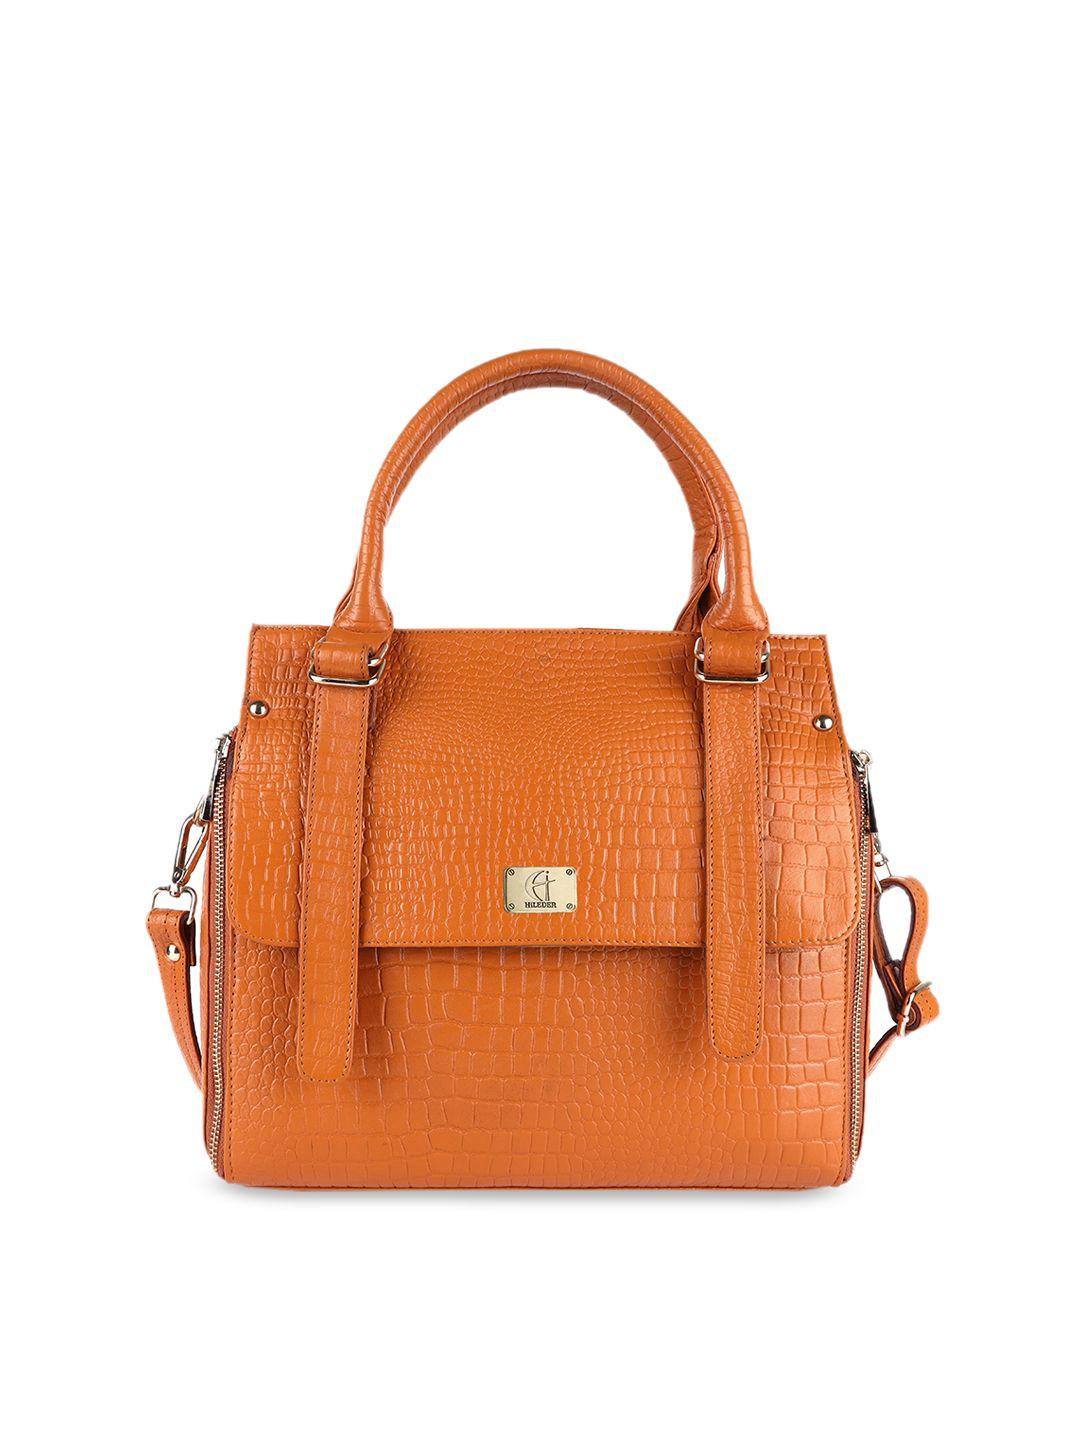 hileder orange textured leather structured handheld bag